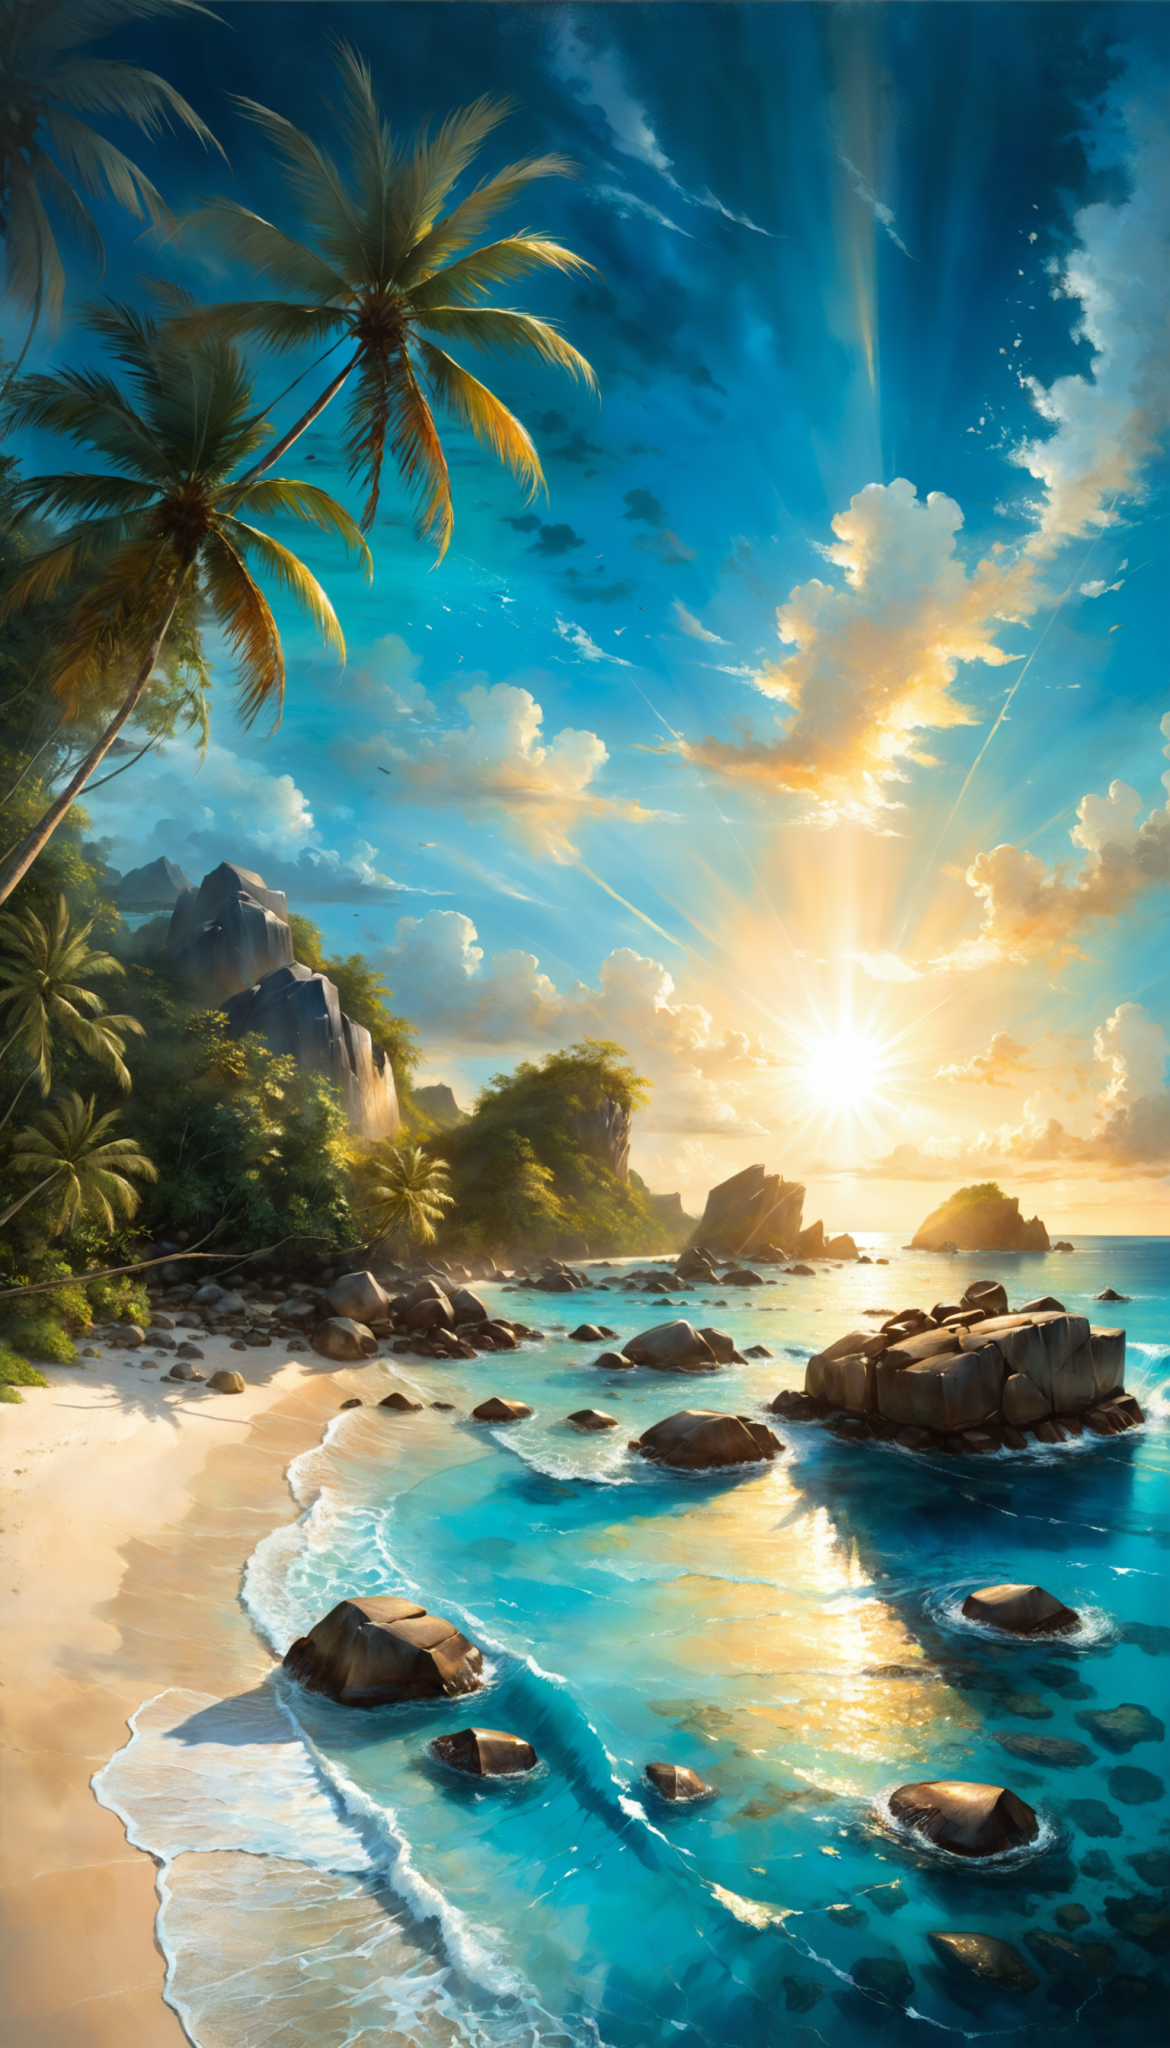 棕榈树环绕的海滩，花岗岩巨石，充满活力的热带天堂，水晶般清澈的蔚蓝海水插图